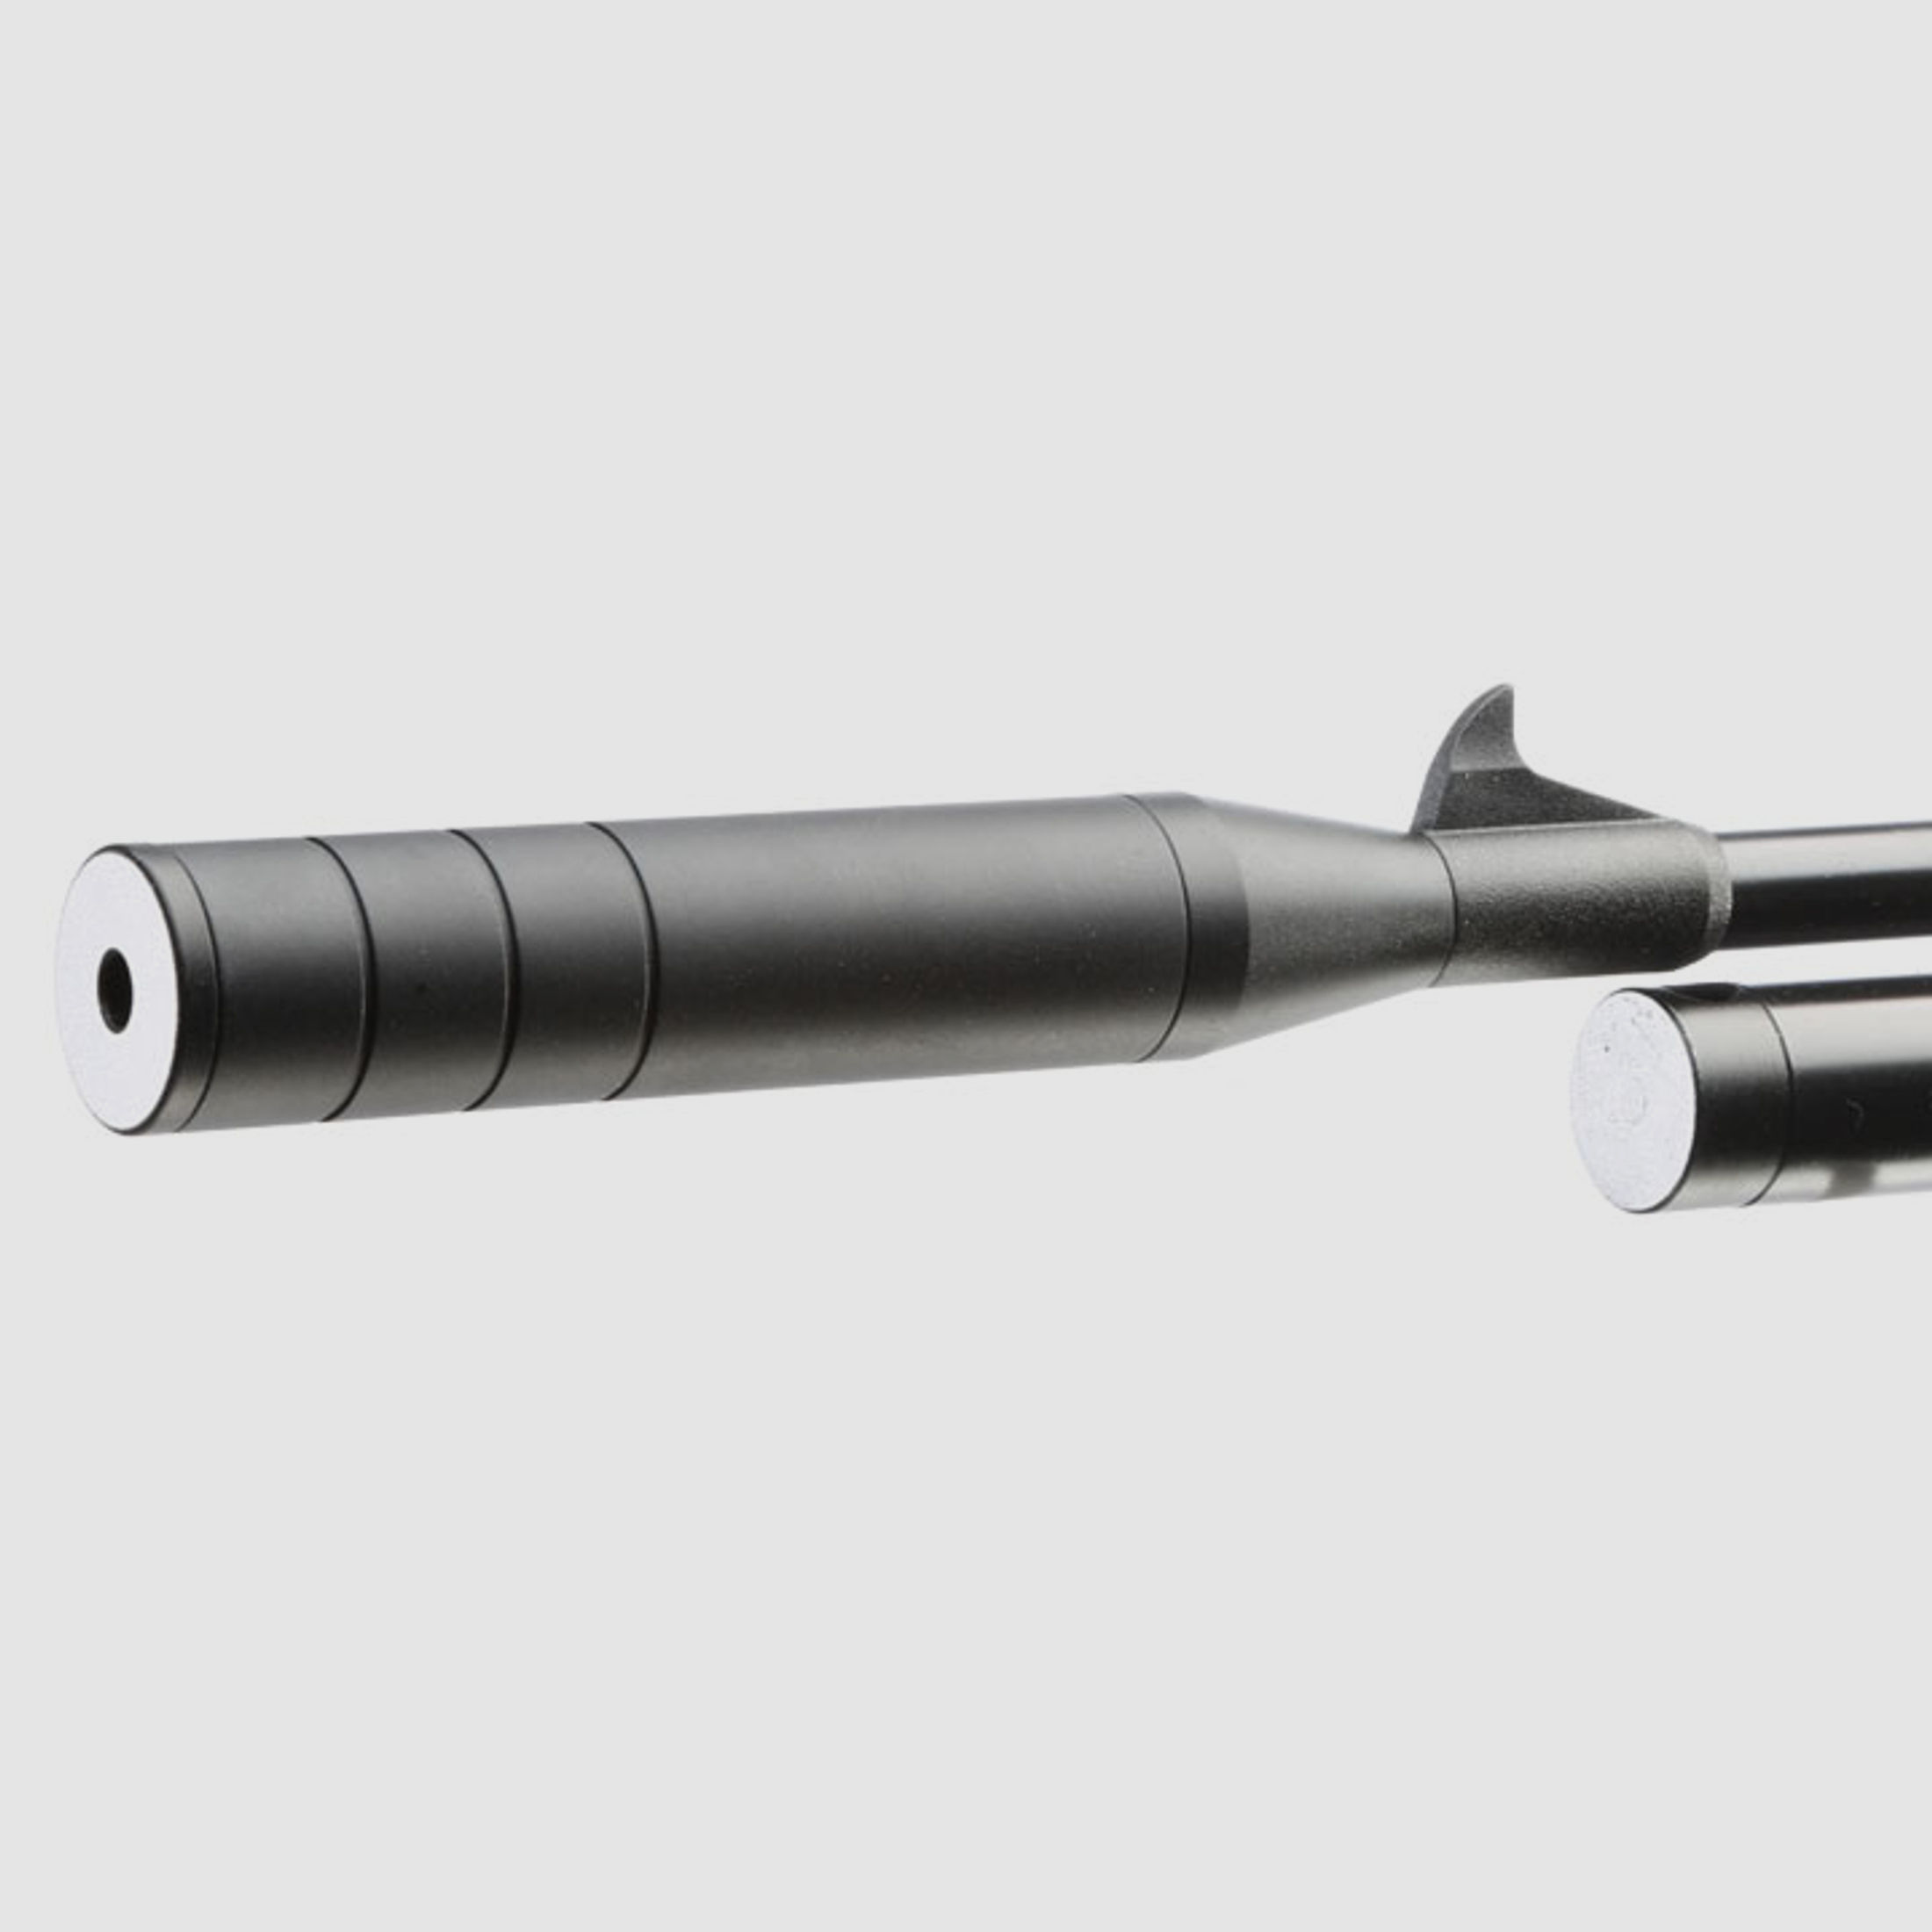 DIANA Stormrider Pressluftgewehr PCP Kal. 4,5 mm Diabolo mit Pumpe und Zubehör